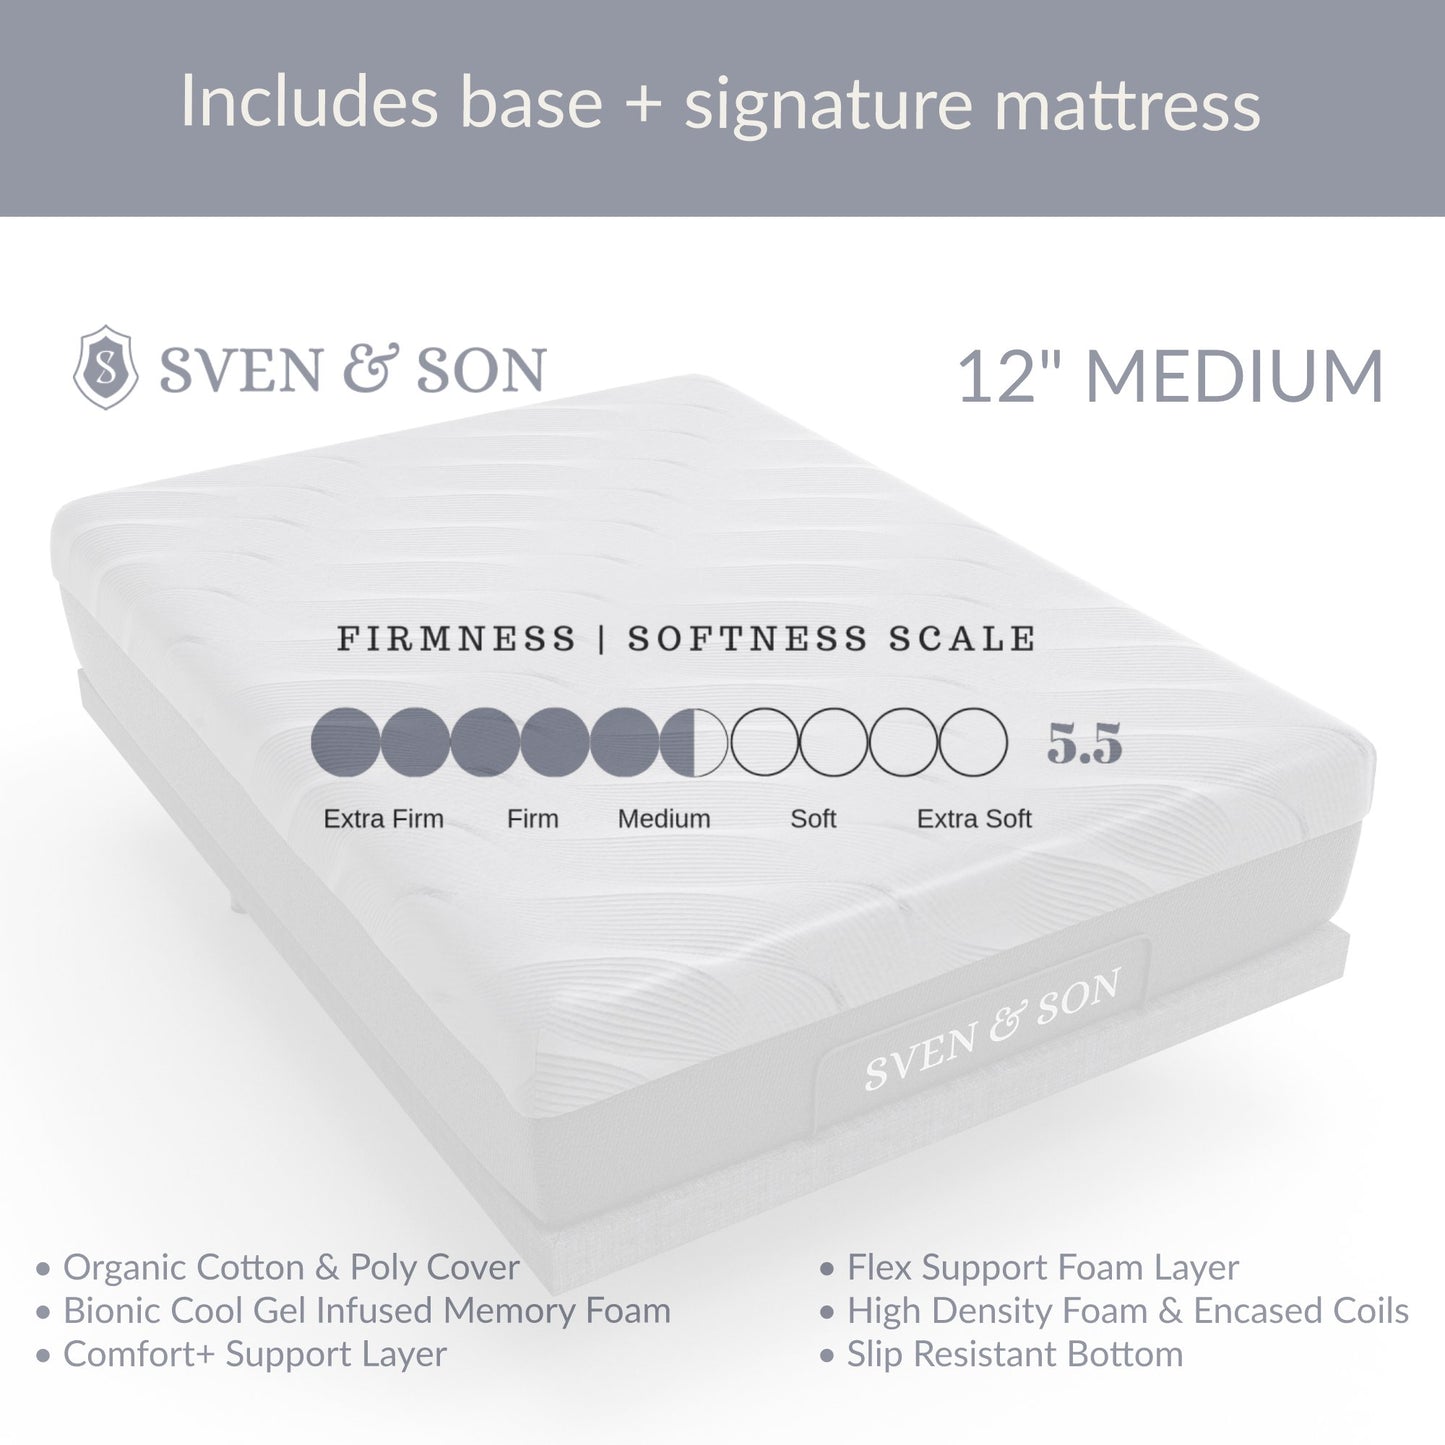 Essential Adjustable Base + Mattress Bundle bundle Sven & Son 